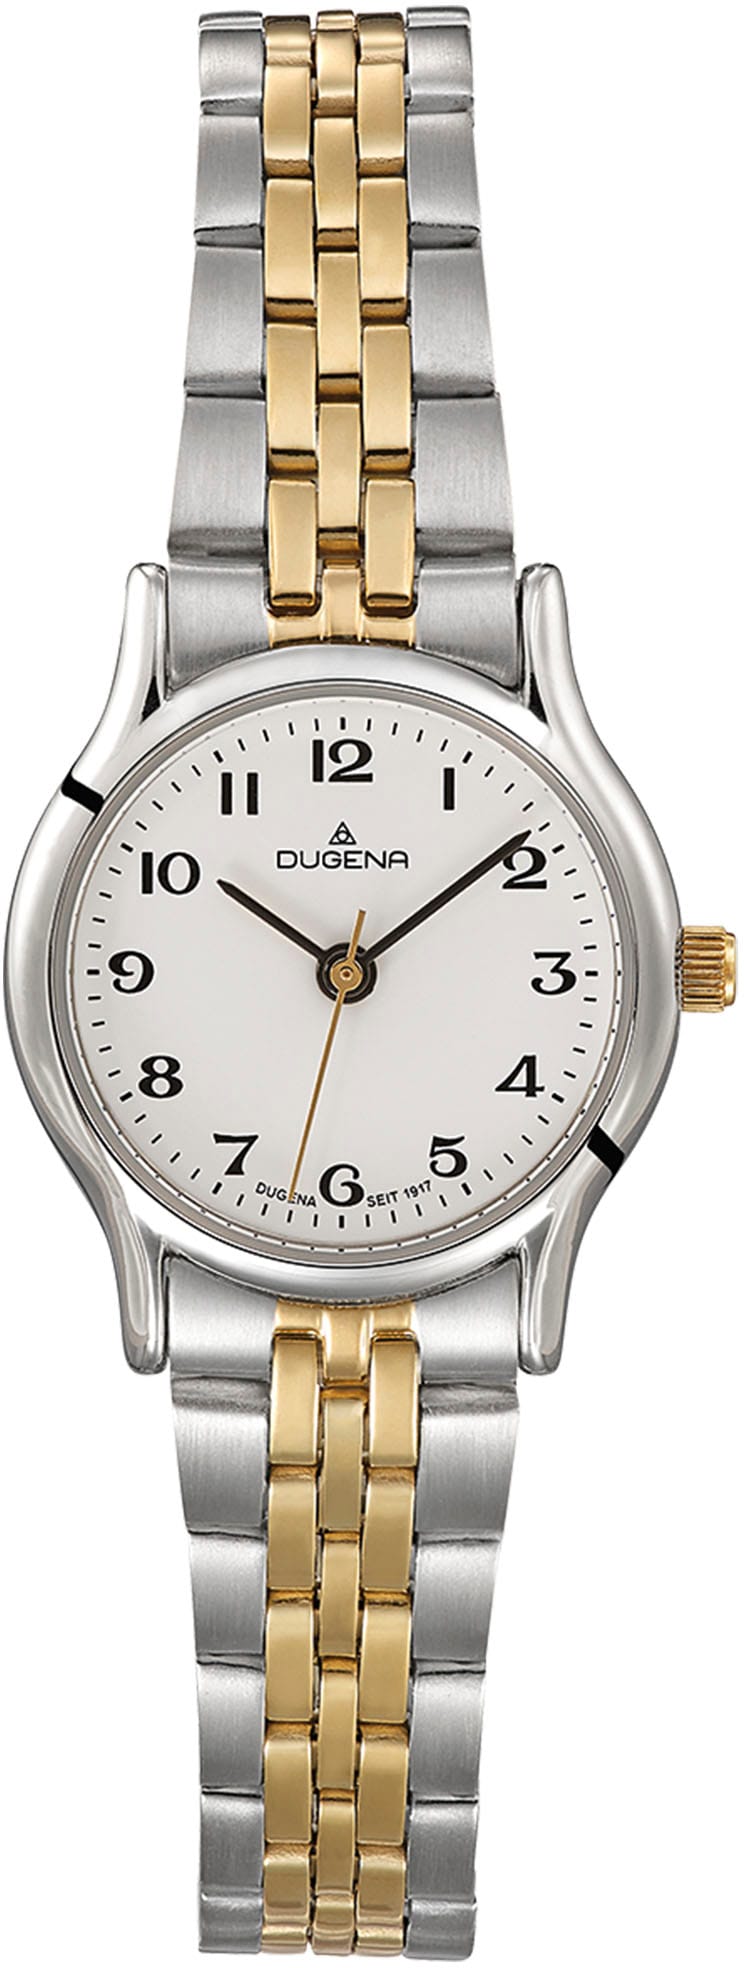 Uhren | Dugena Online-Shop Dugena kaufen » BAUR